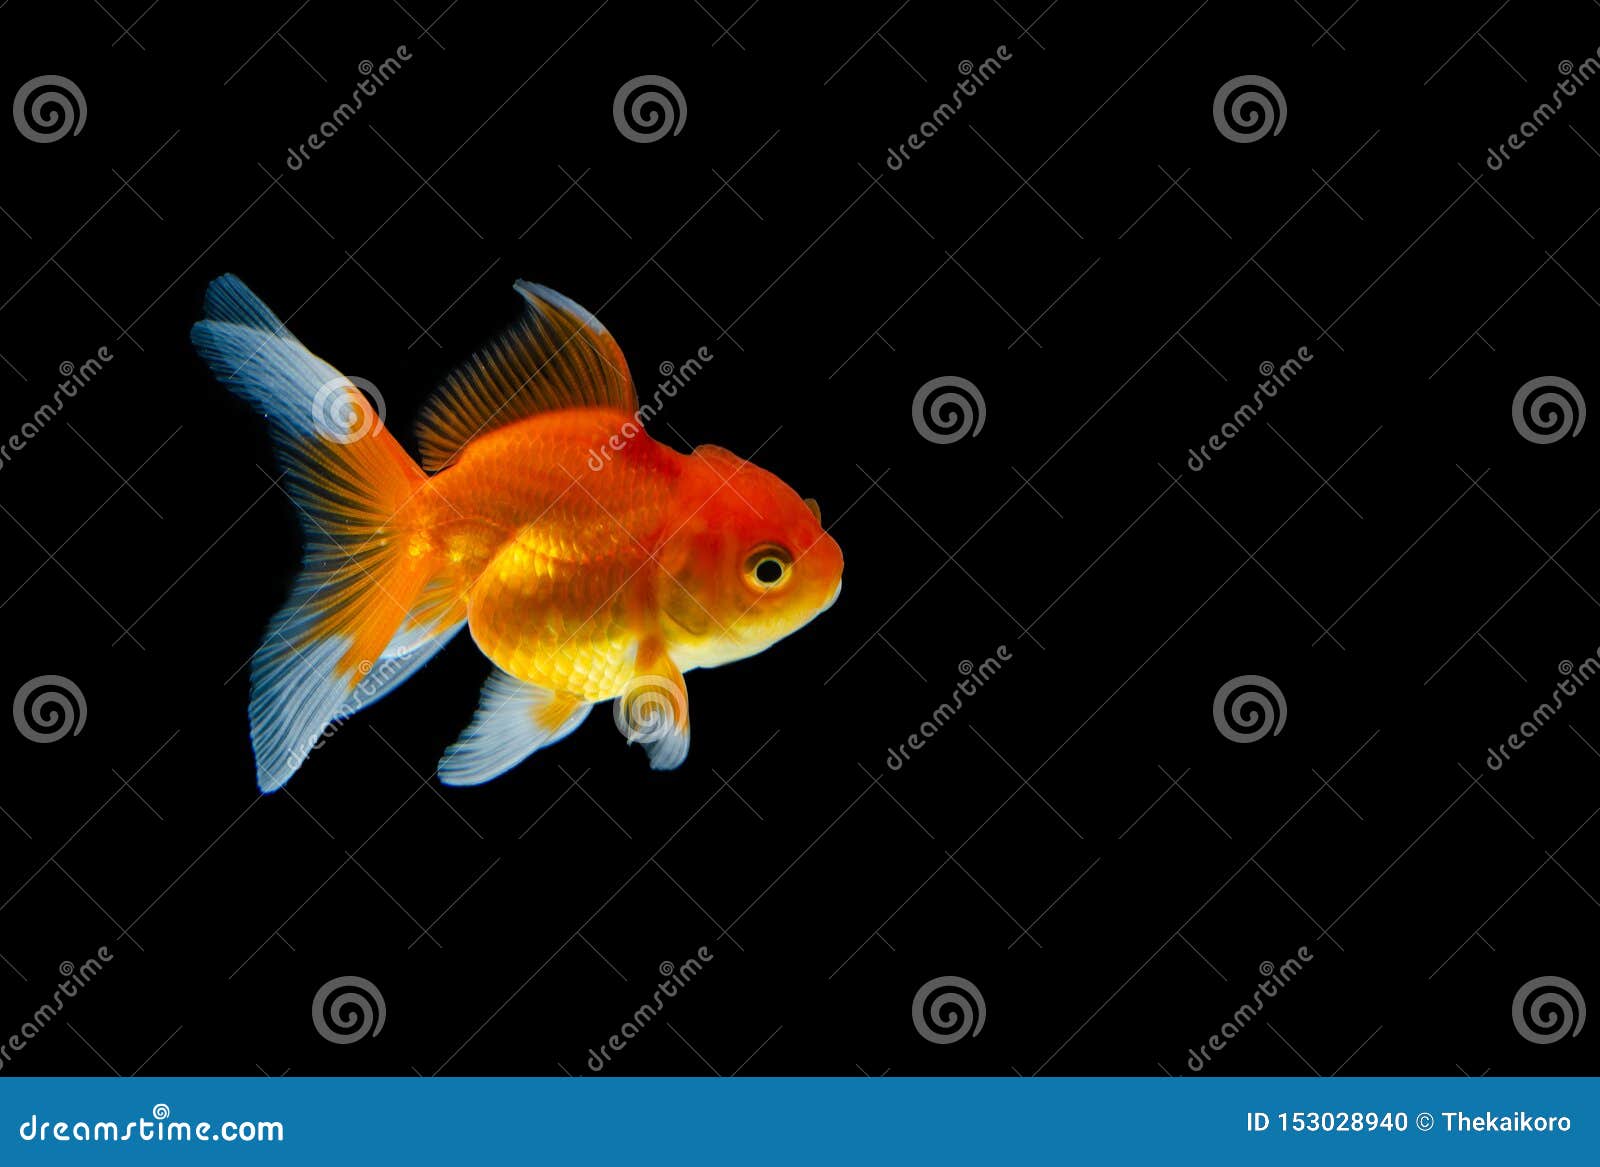 Goldfish Nature Beautiful Fish Against the Dark Background Stock ...